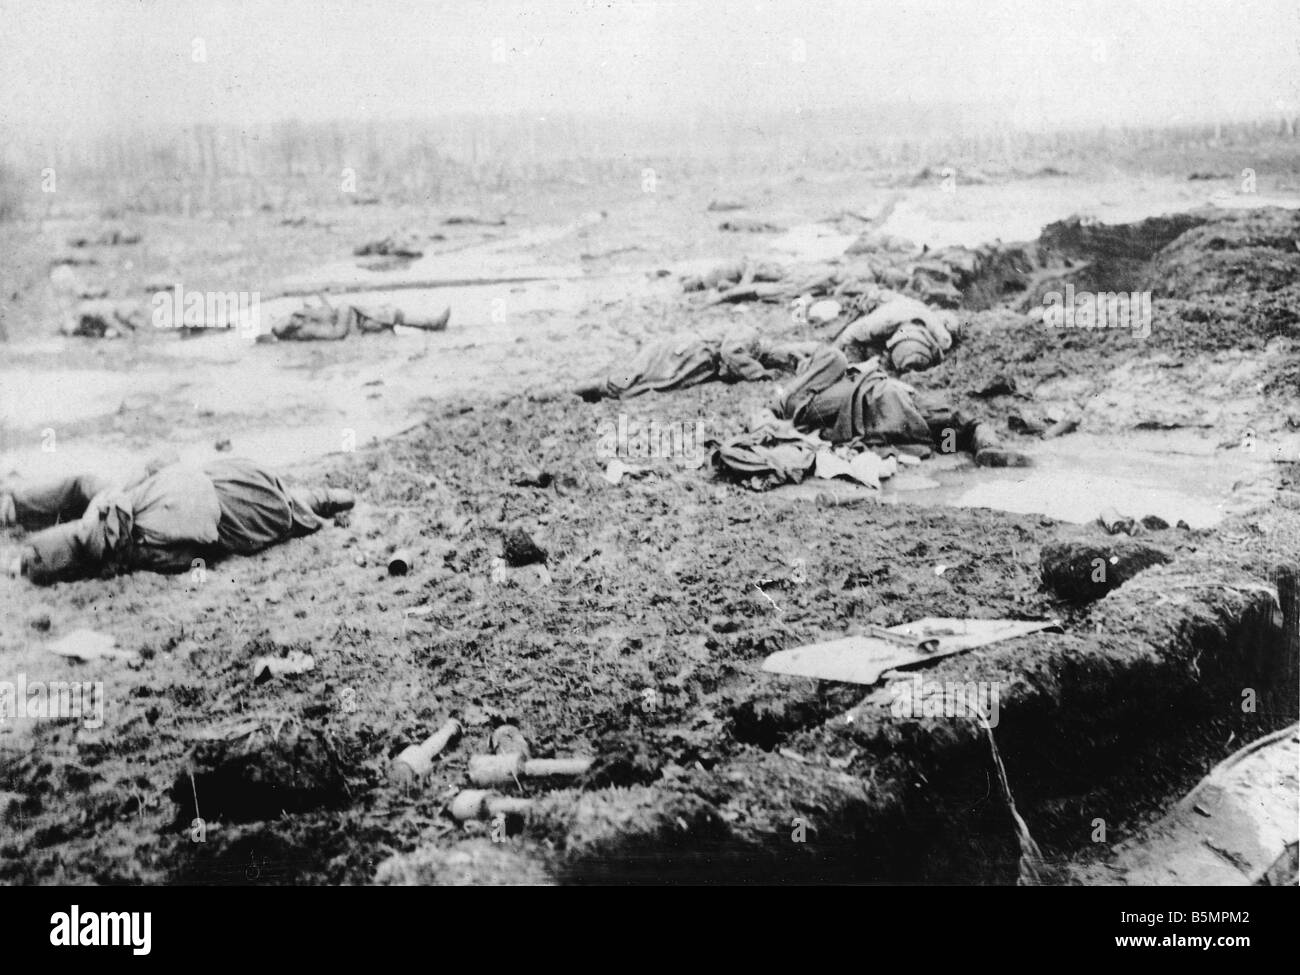 9 1916 3 18 Truppen A1 4 E Schlacht des ersten Weltkrieges östlichen Front Niederlage des russischen Postawy 1916 Schlachtfeld nach der offensive ag Stockfoto